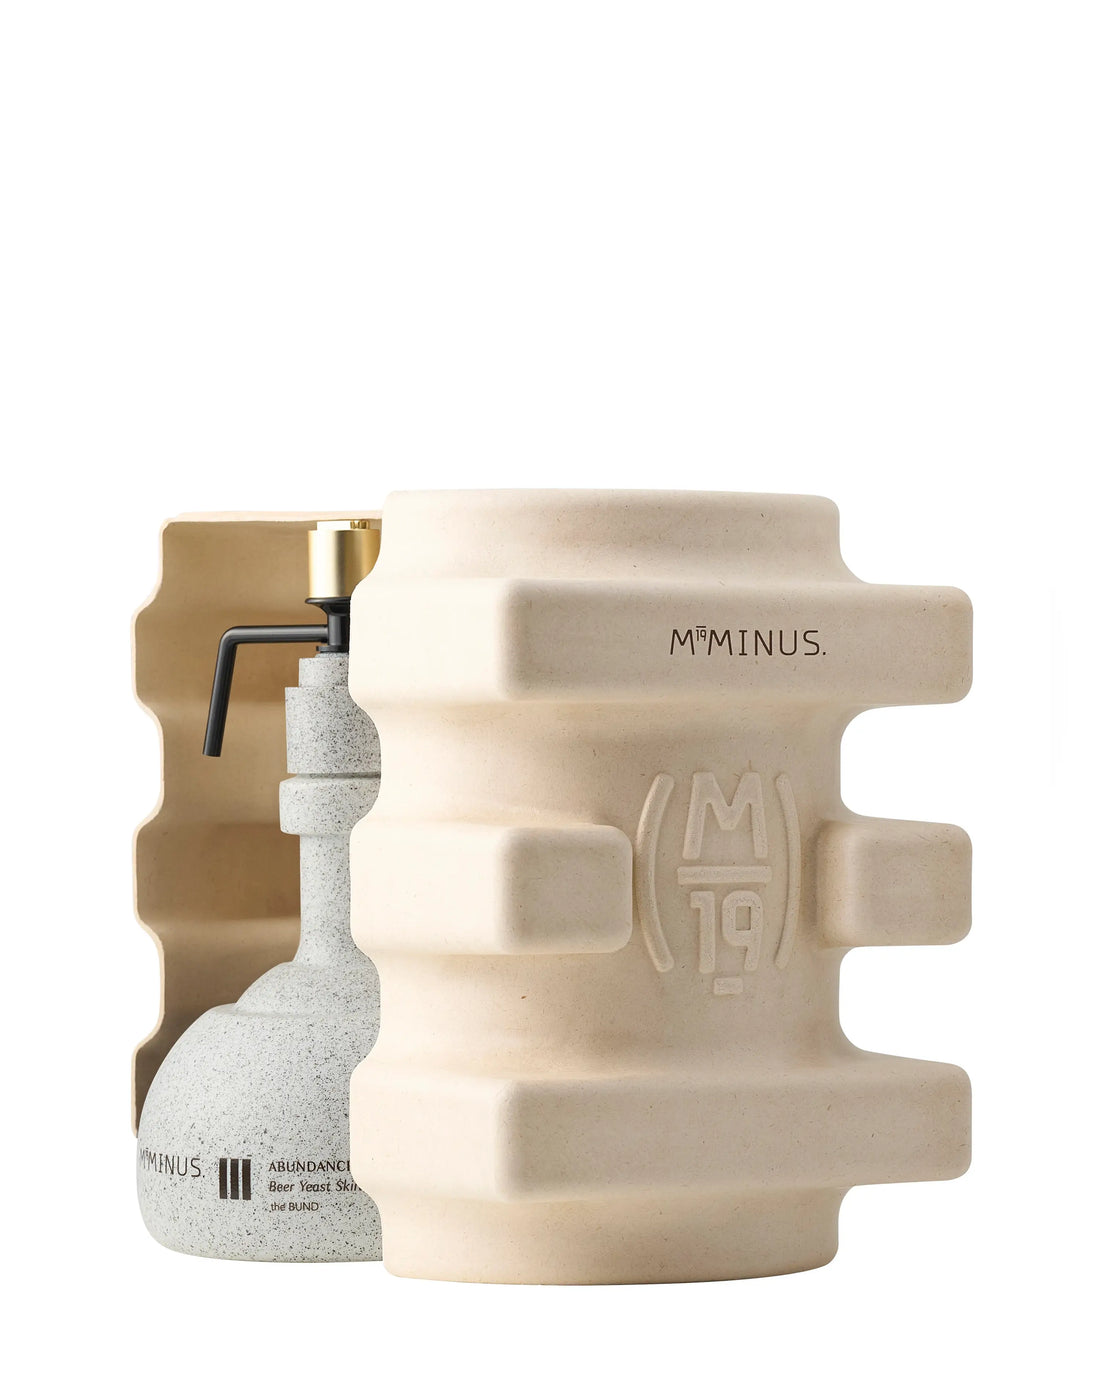 M19Minus the BUND - III Abundance Beer Yeast Skin Immersion - Body Wash